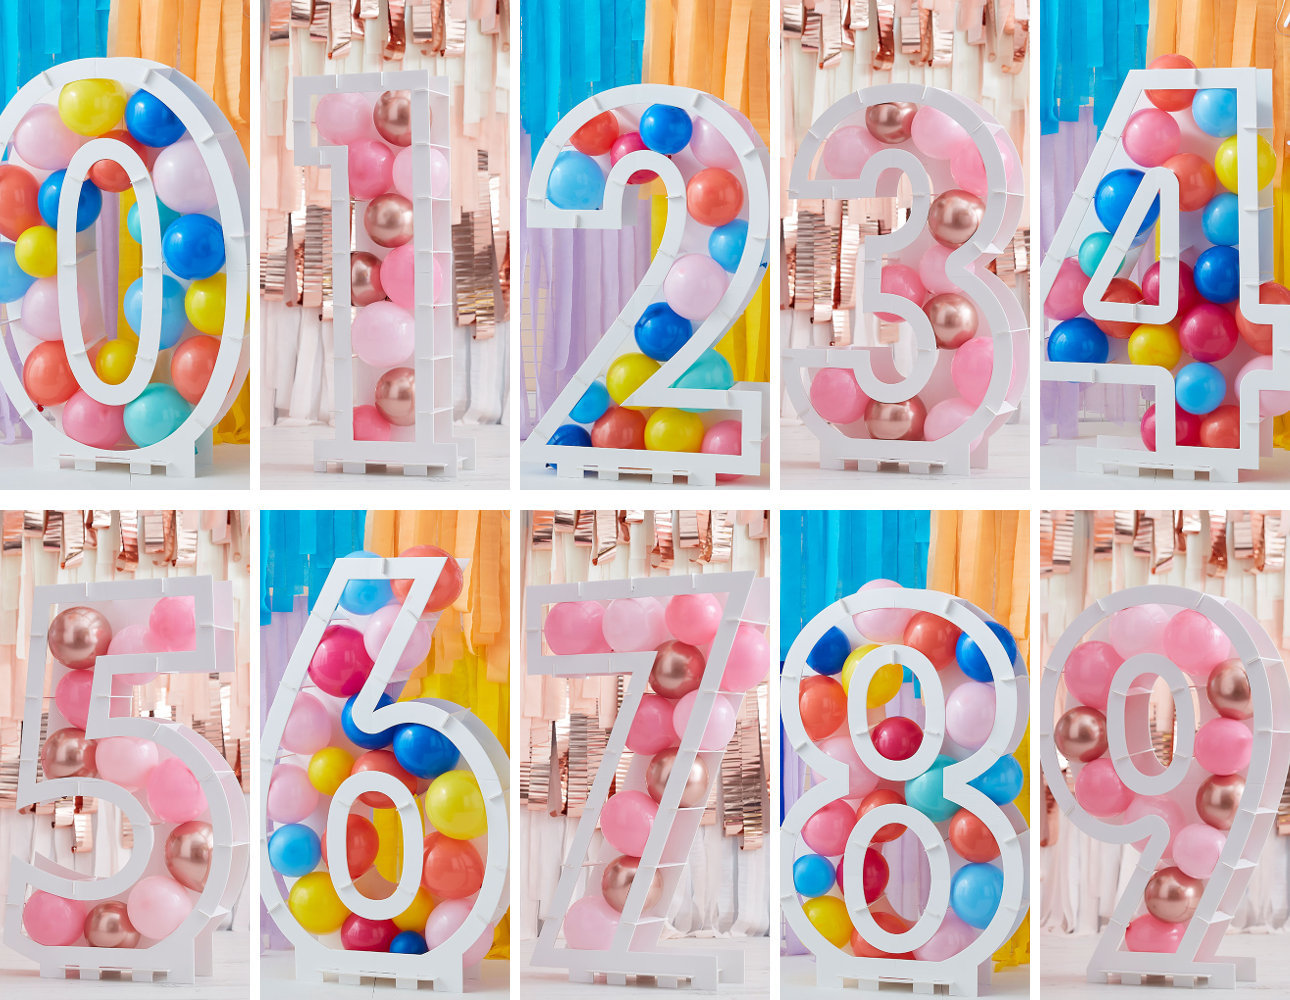 Las mejores ofertas en Soporte de globos de fiesta de cumpleaños